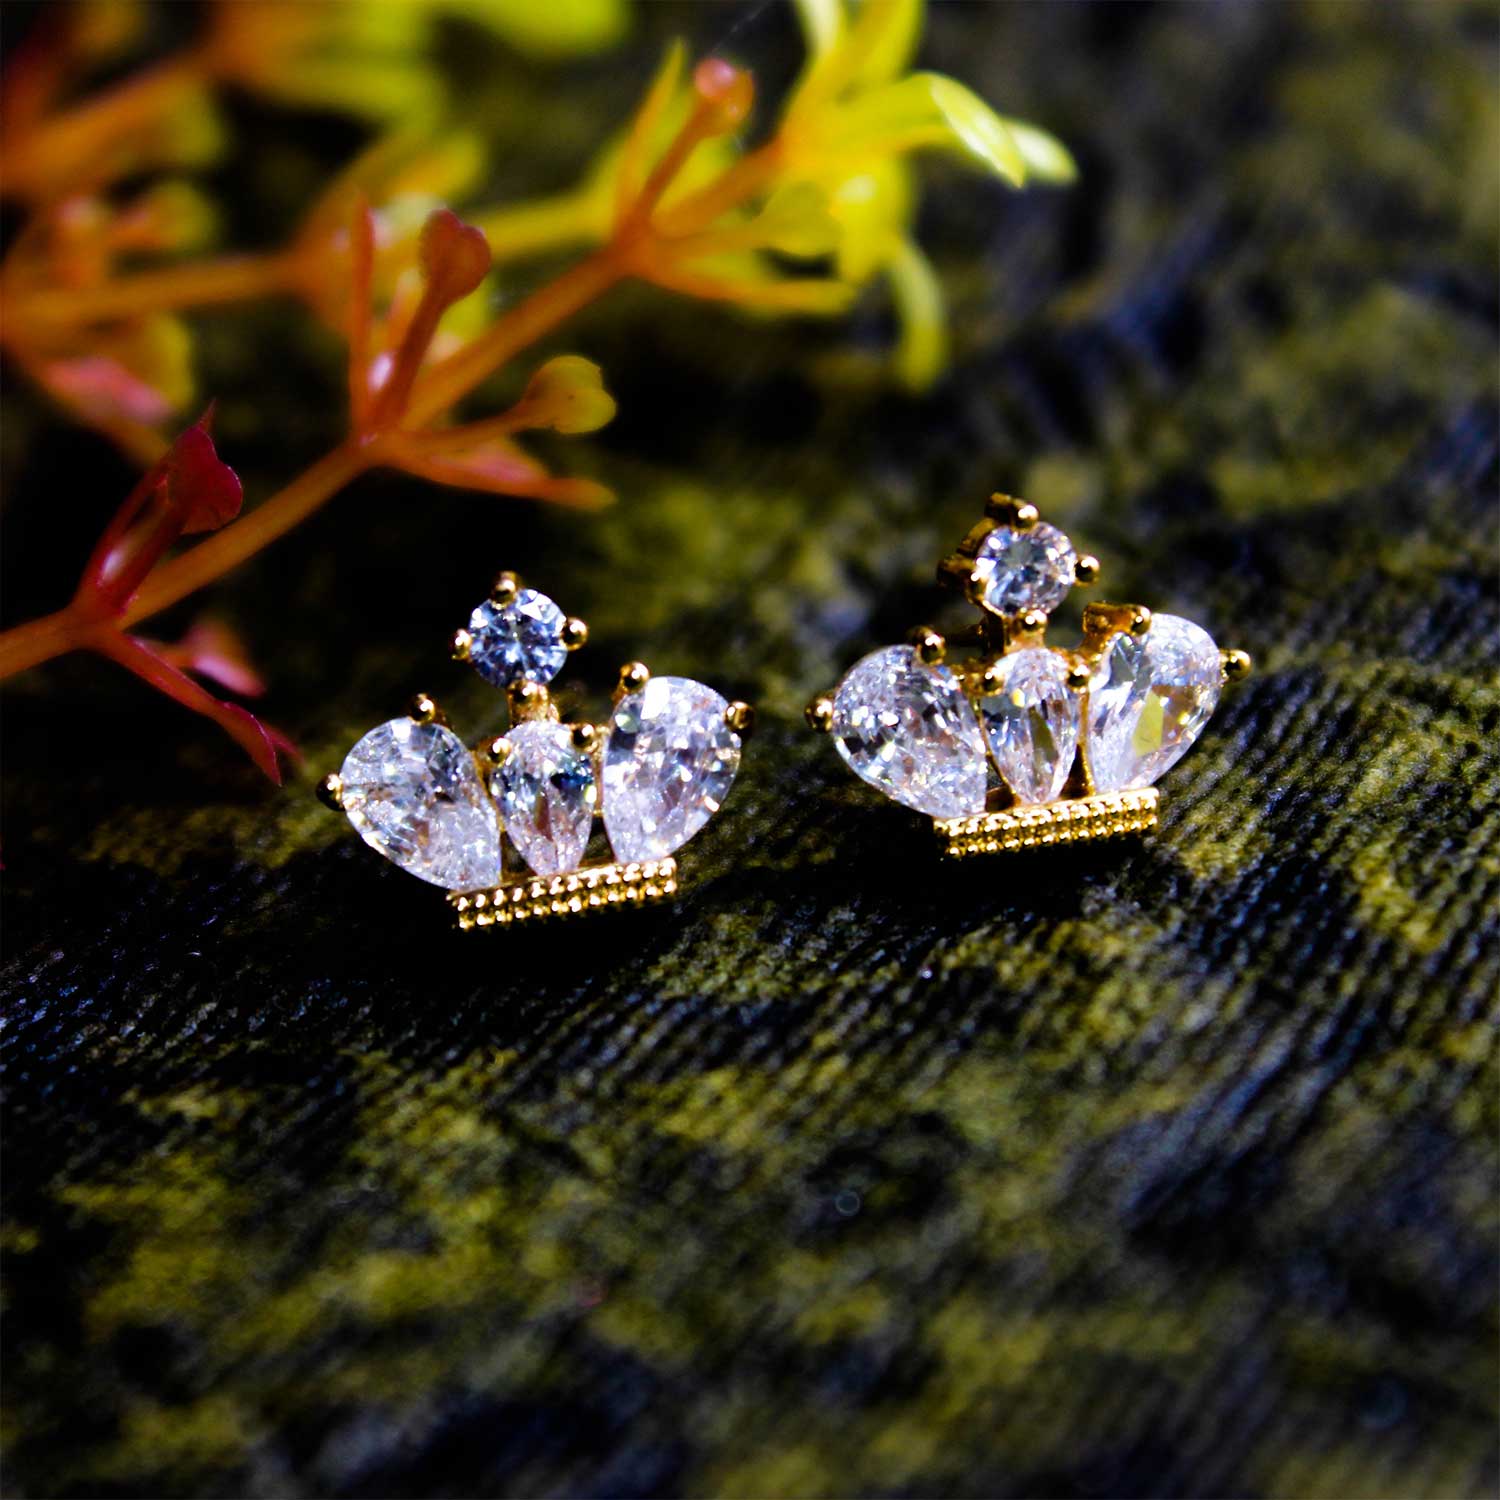 Buy Beautiful Crown Star Earrings in 18KT Yellow Gold Online | ORRA